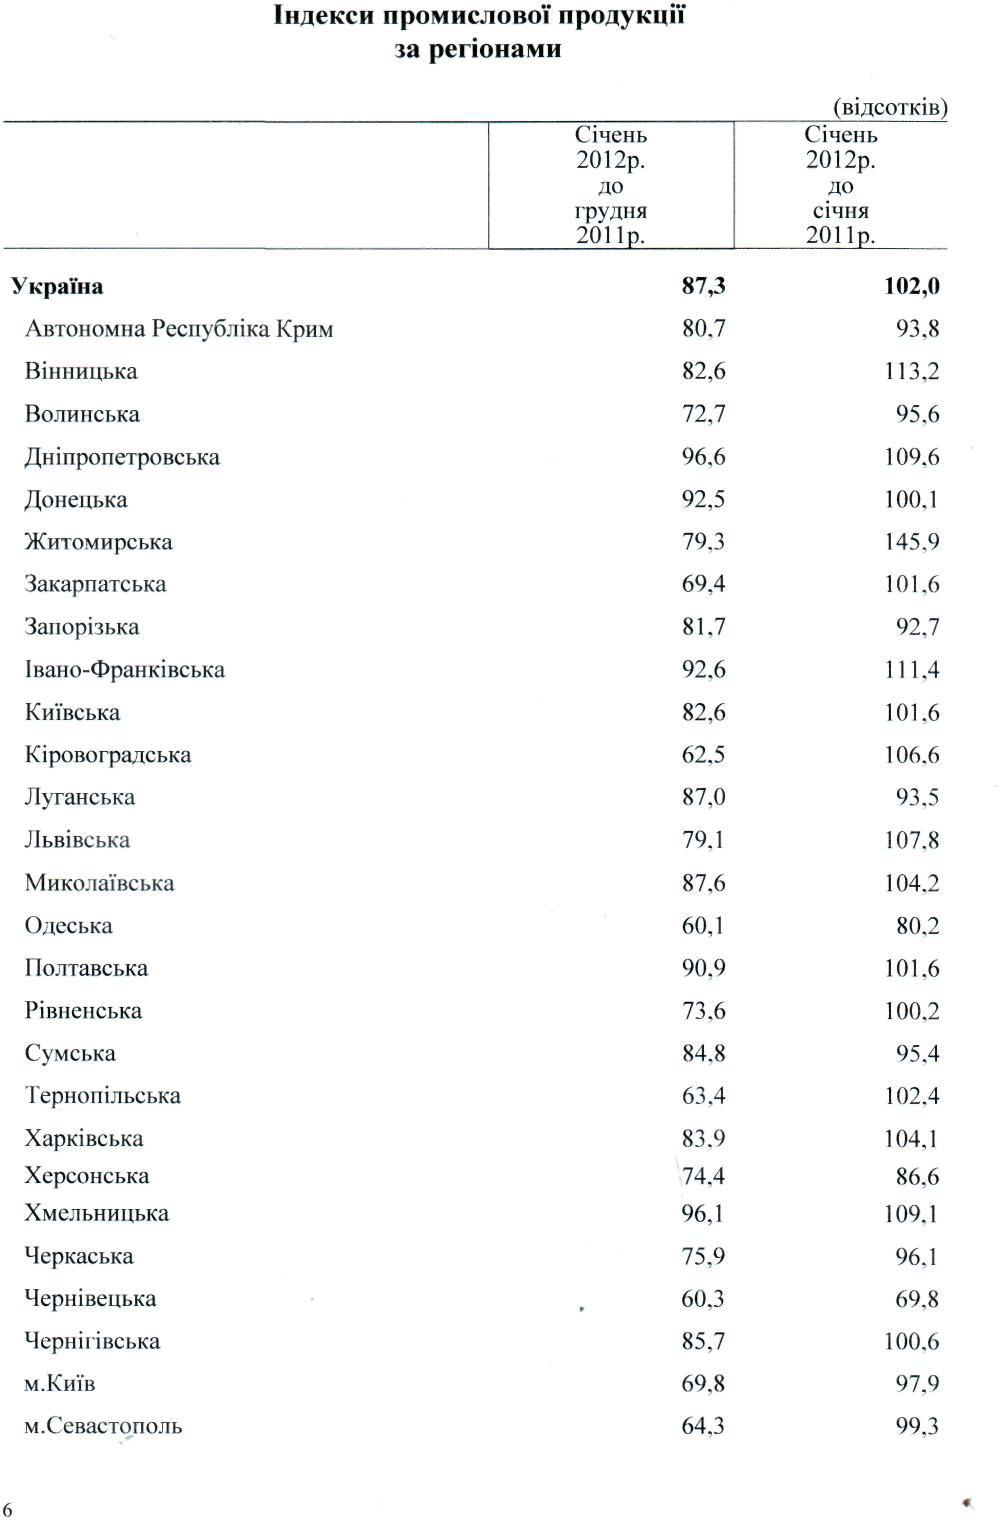 Чернівецька влада довела область до економічного краху+ статистика